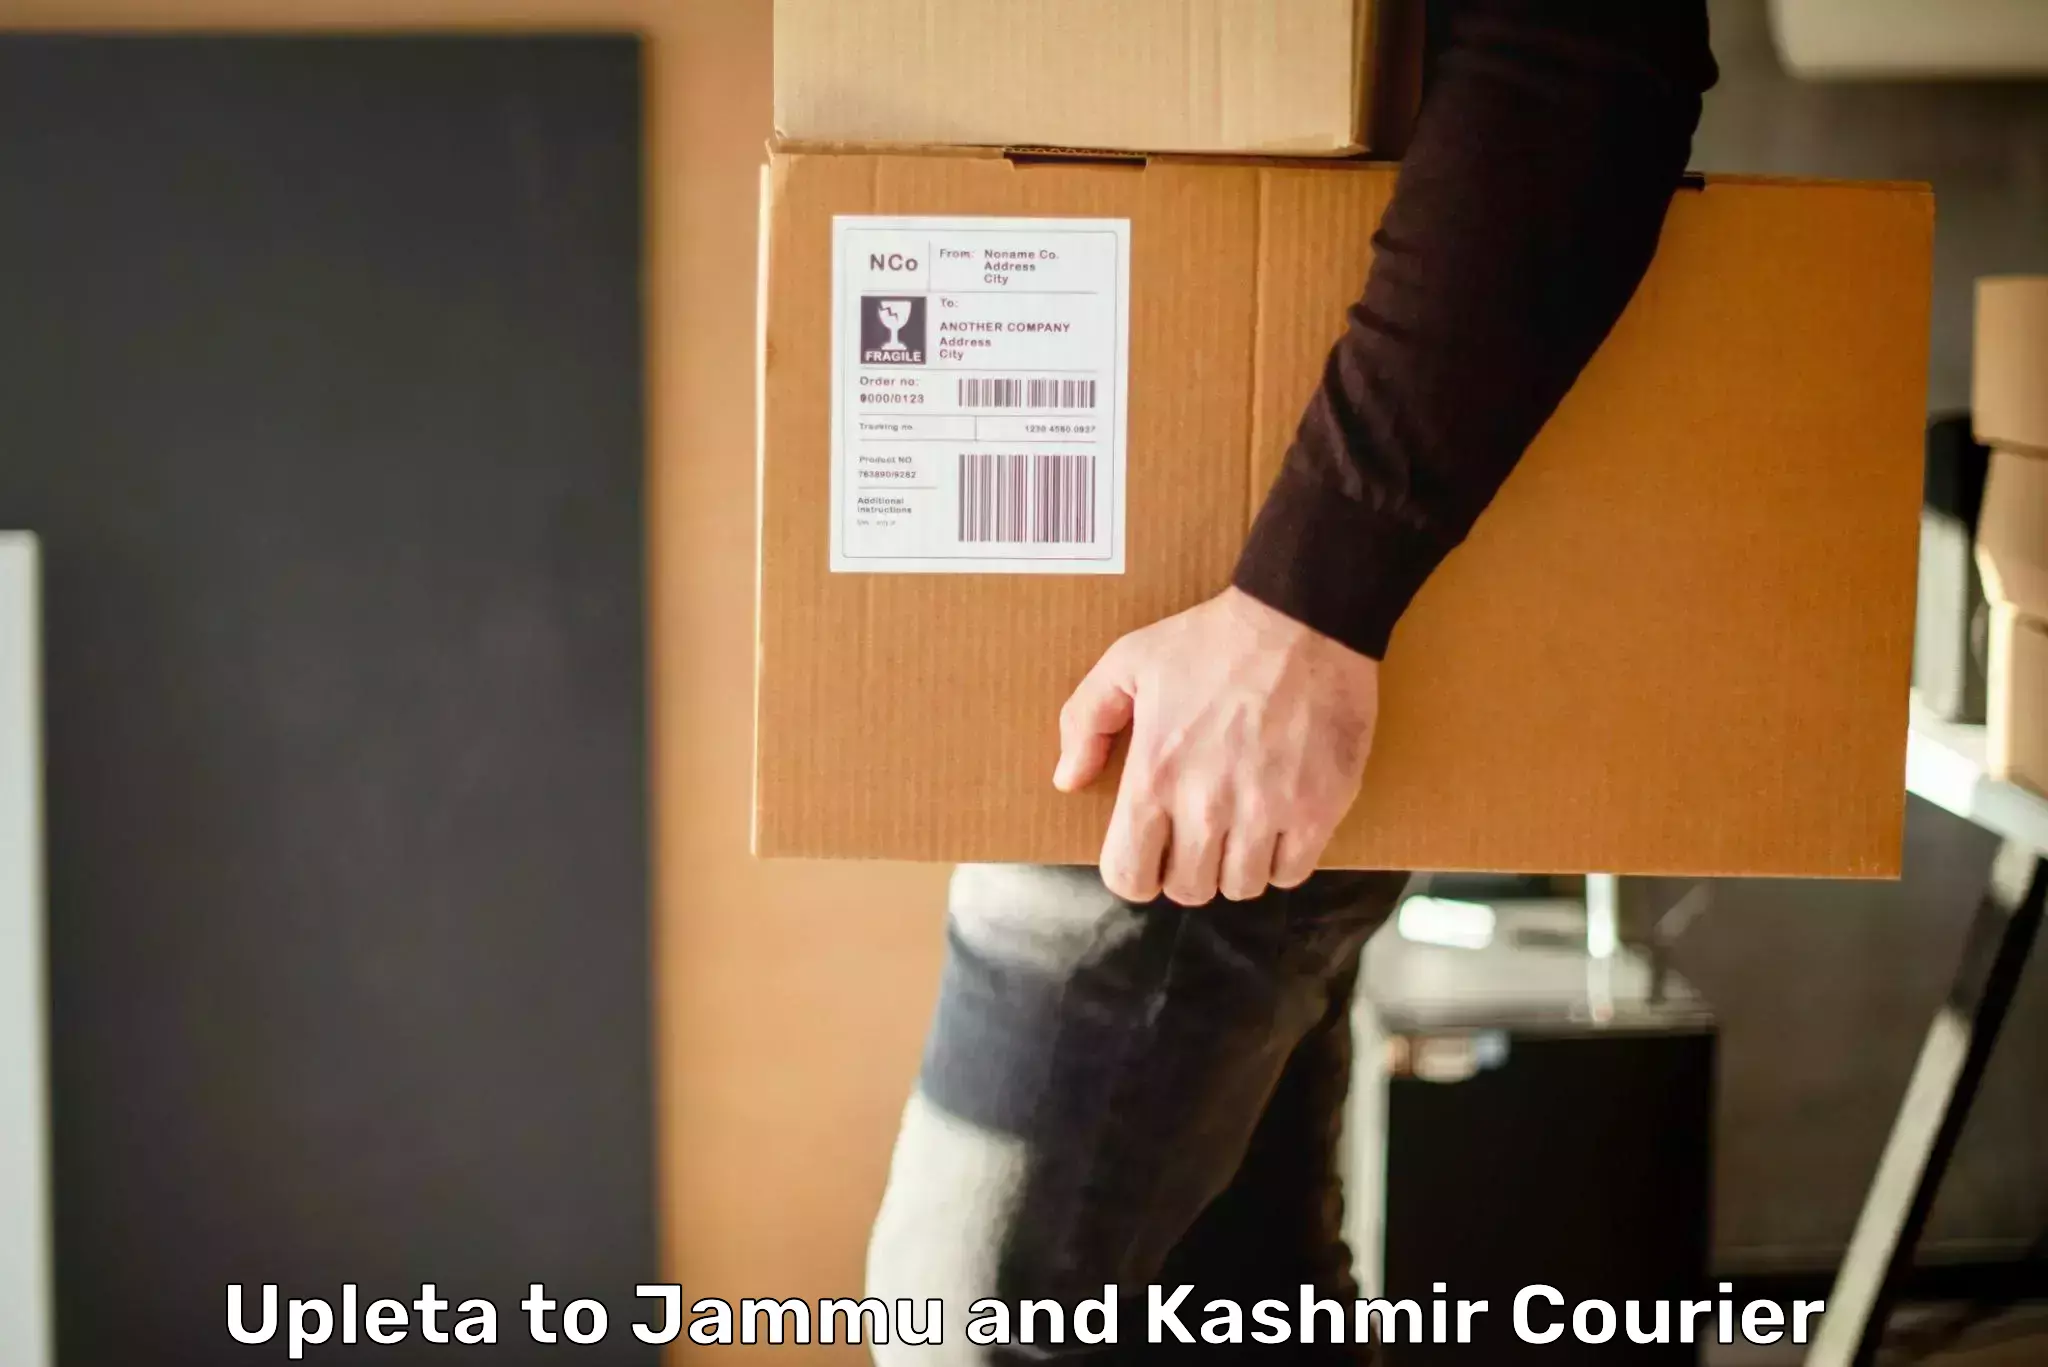 Courier app Upleta to Jammu